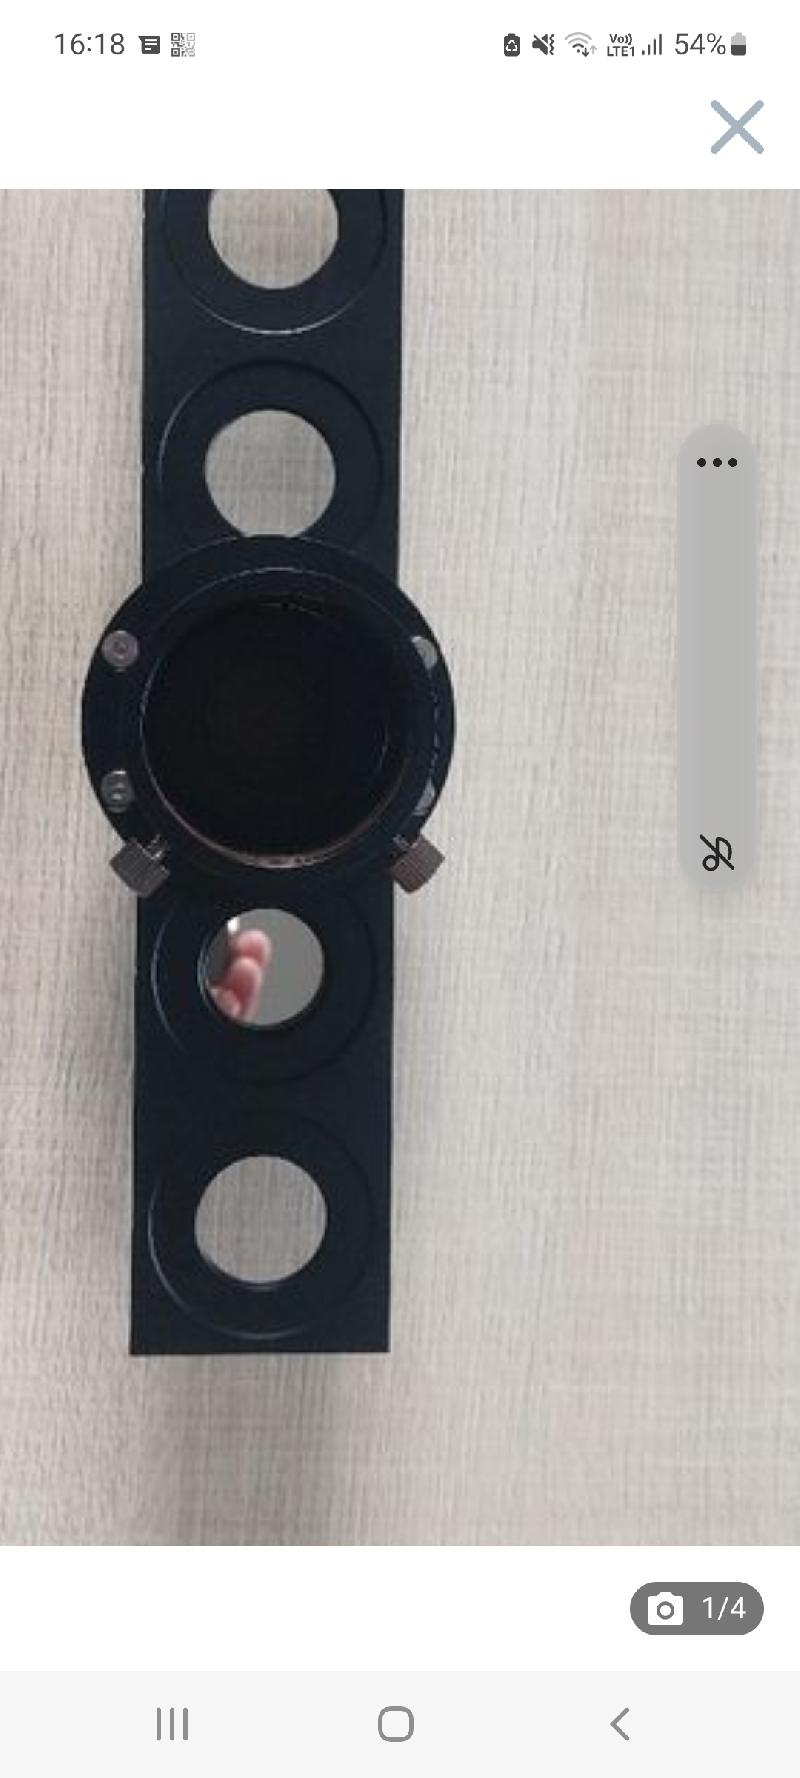 Barrette a filtre téléscope compatible 2 et 1'25